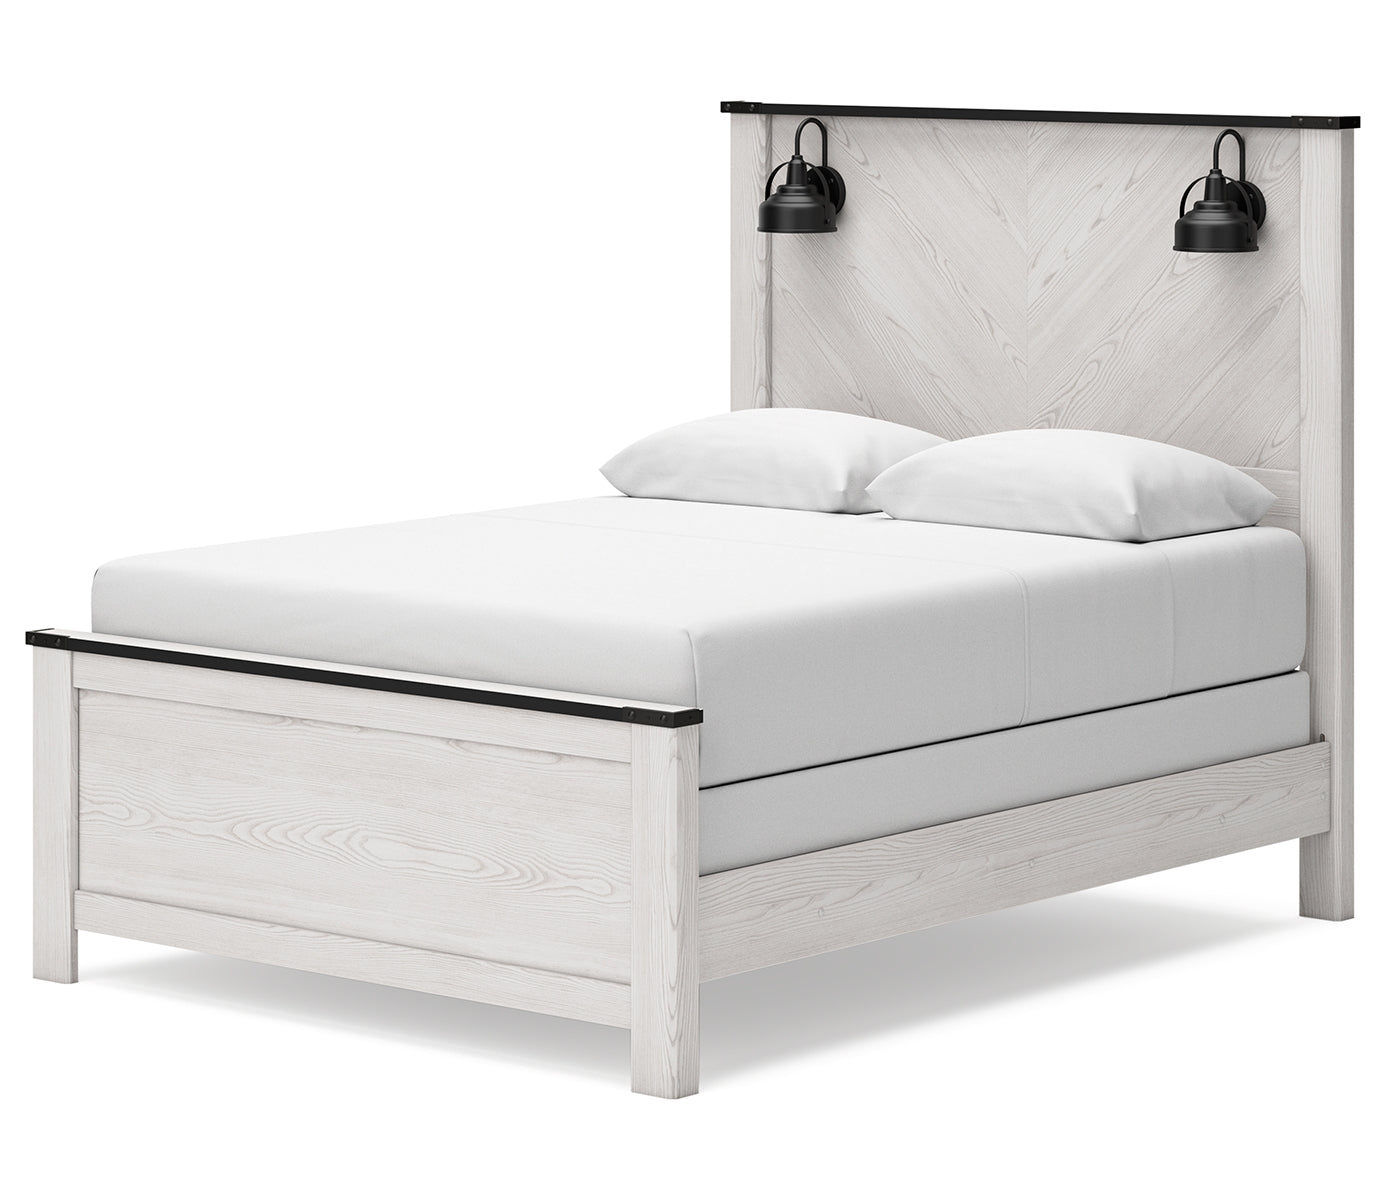 Schoenberg Queen Panel Bed with Dresser